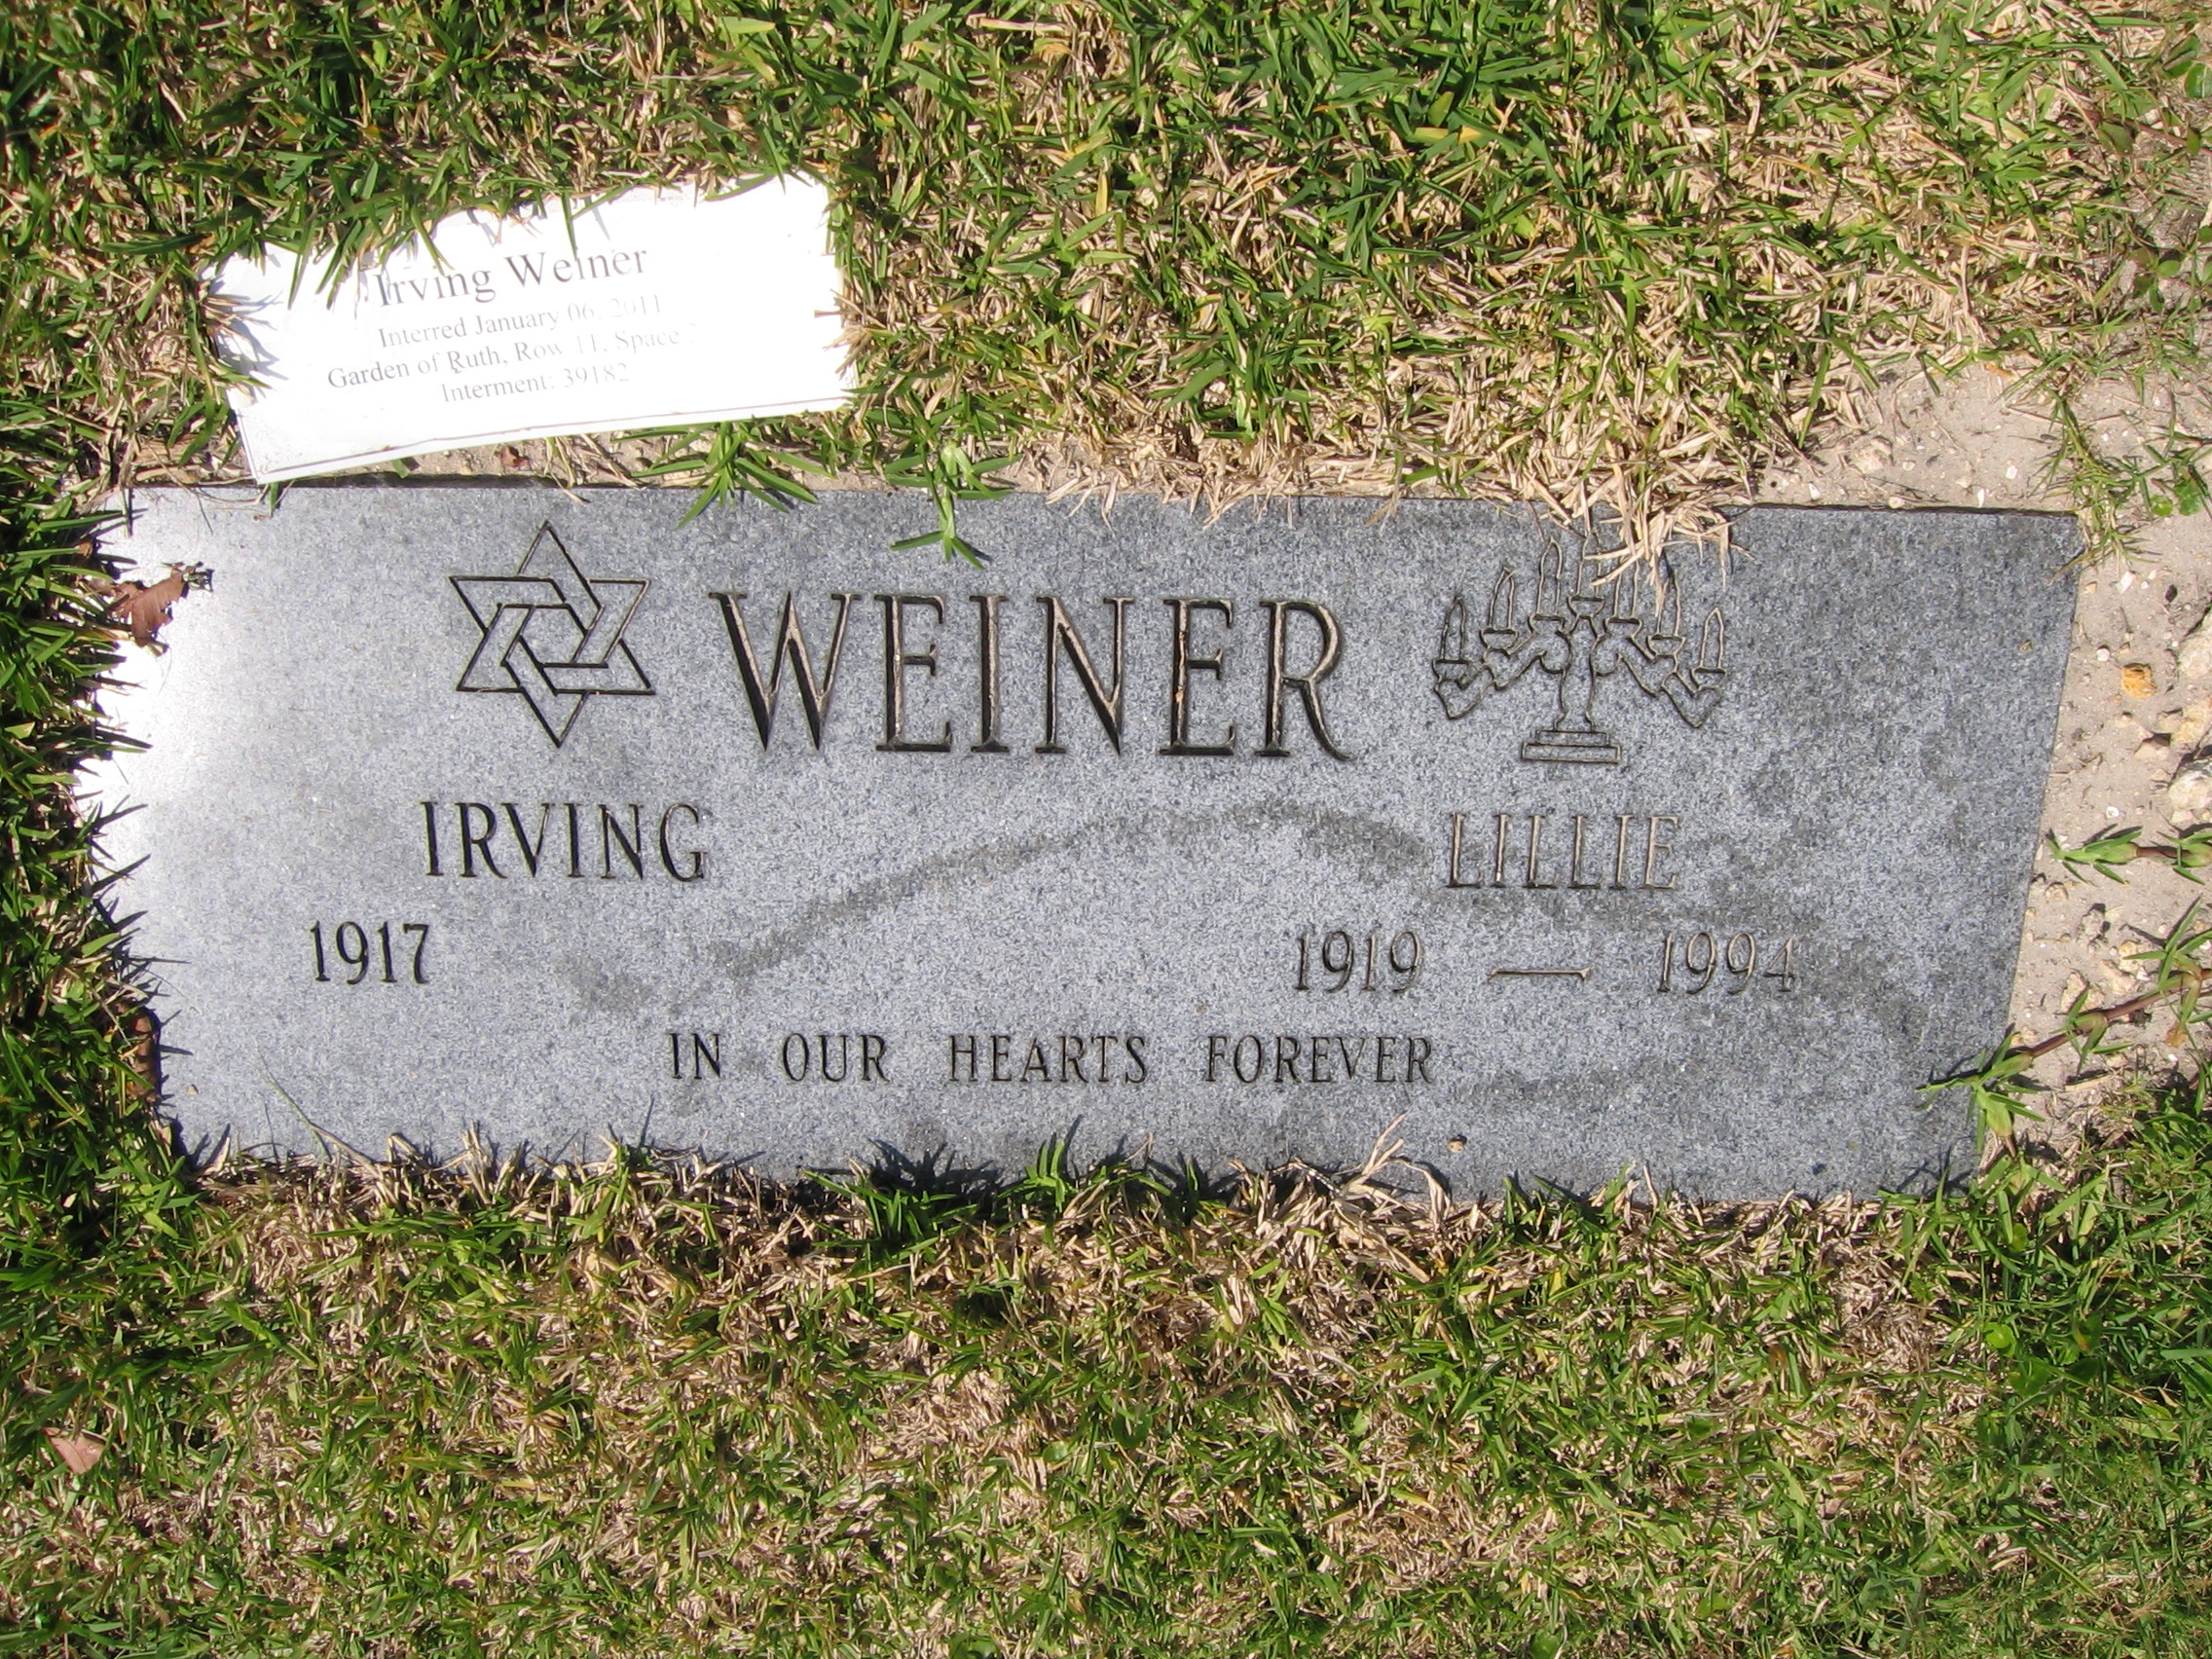 Irving Weiner